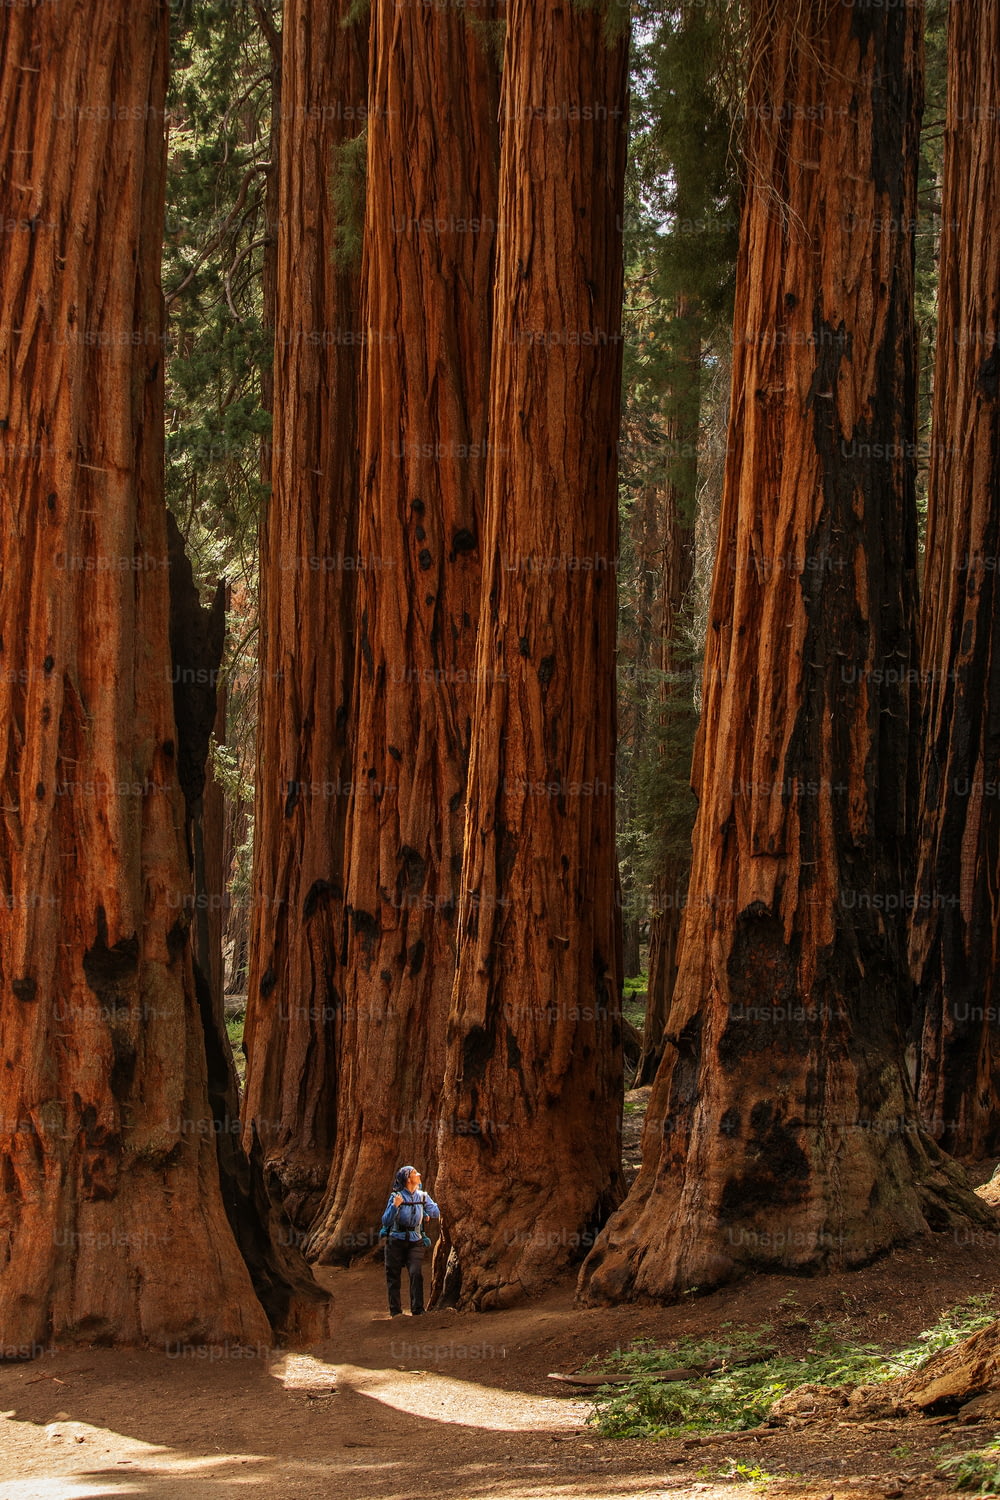 Mutter mit Kleinkind besucht Sequoia Nationalpark in Kalifornien, USA